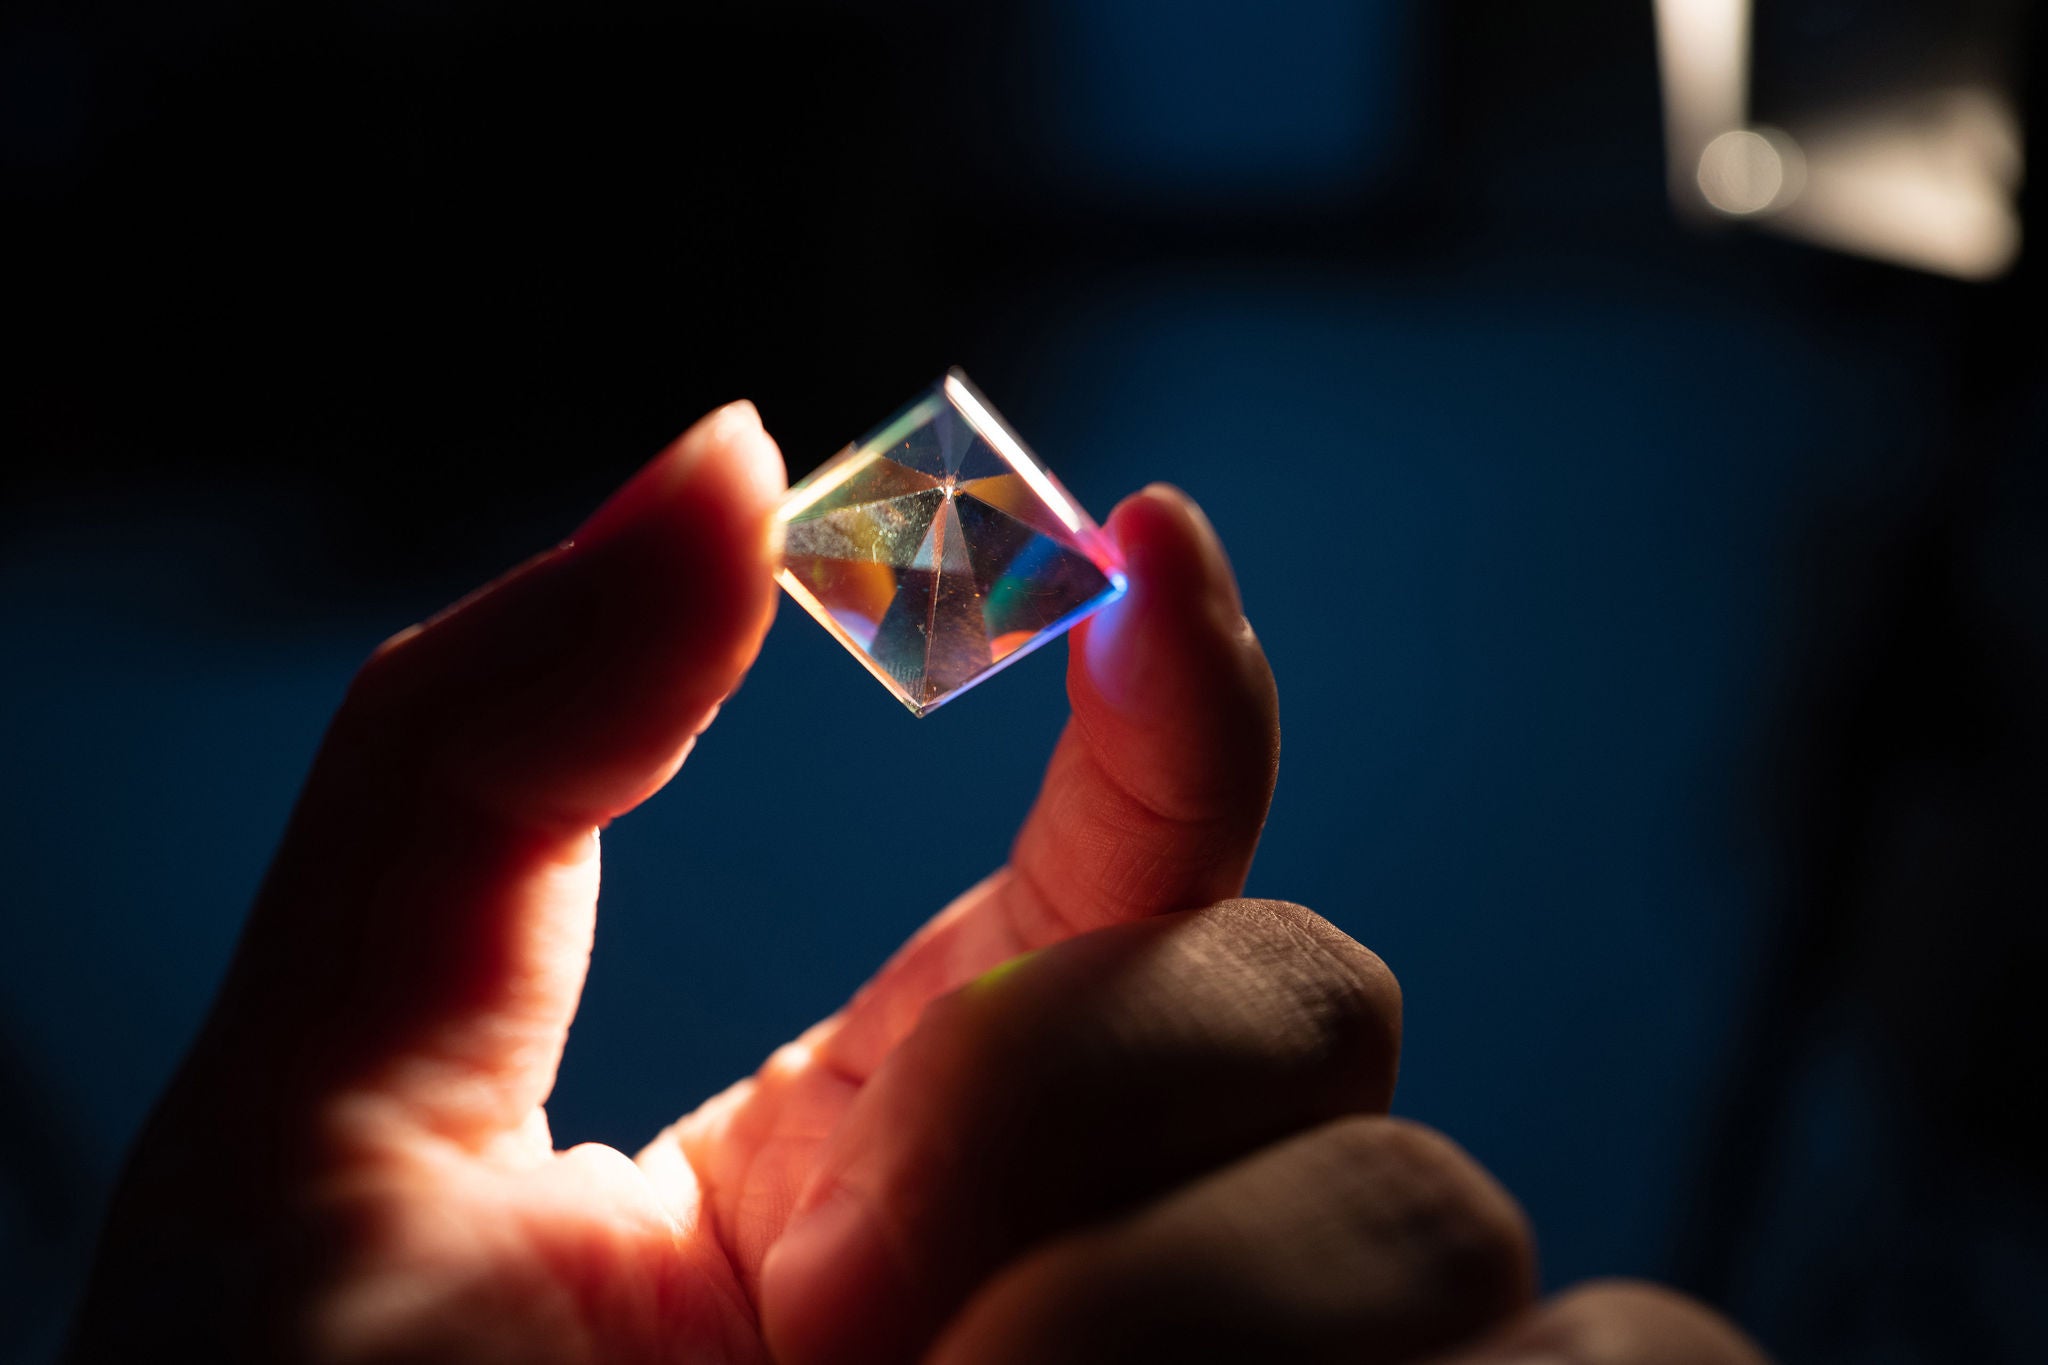 Rhombus crystal being held between persons fingers